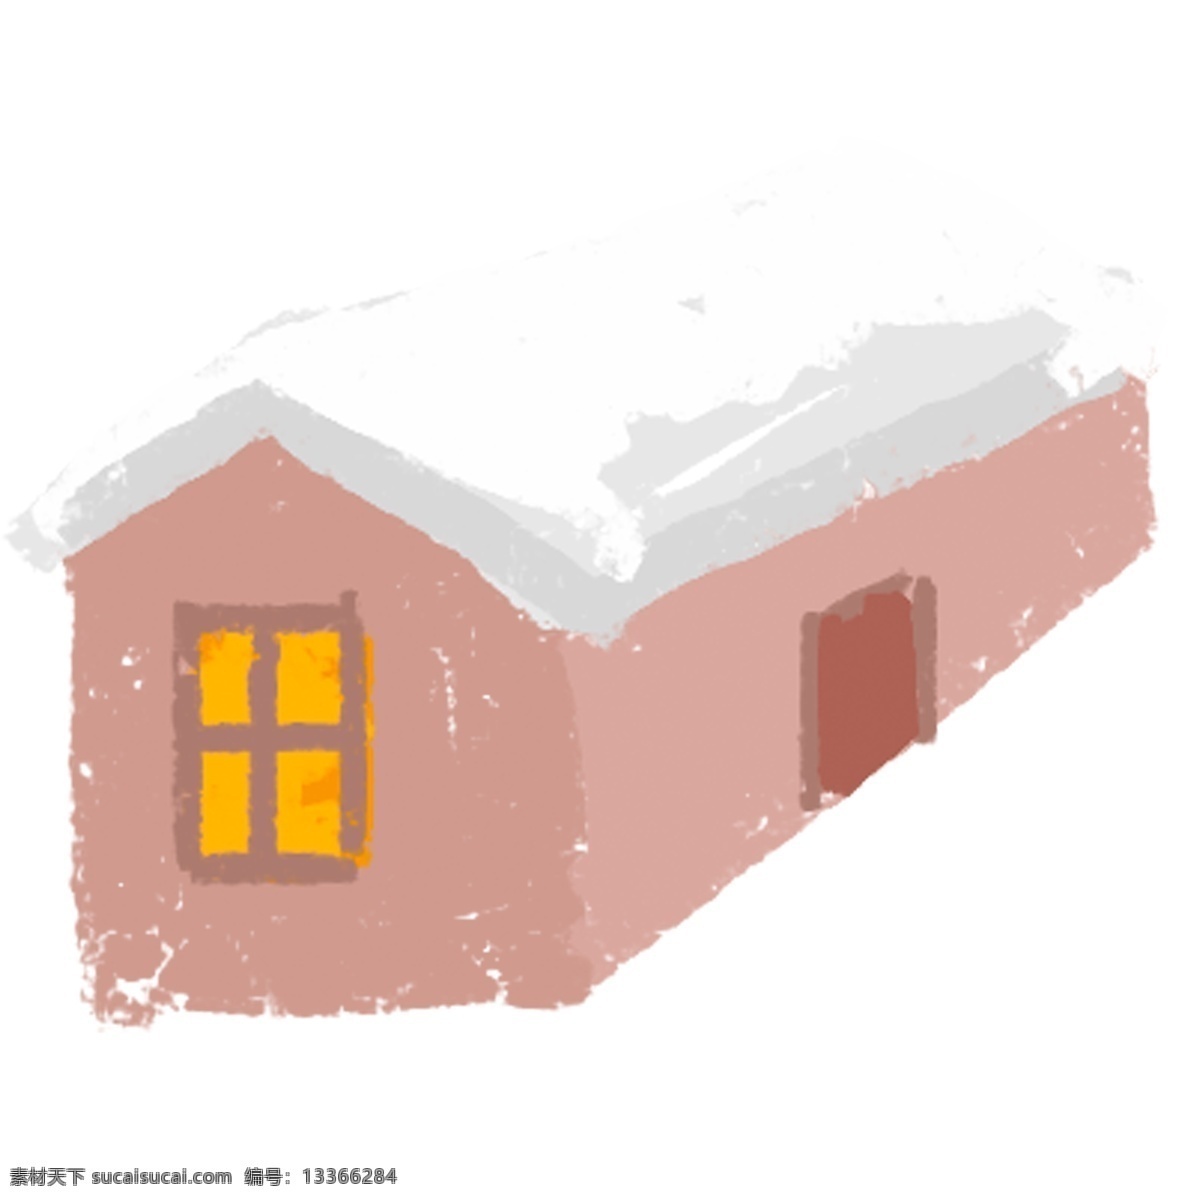 卡通 手绘 红 棕色 雪屋 温暖的房子 卡通屋 冬季 侧着的雪屋 下着雪的屋子 盖着雪的屋